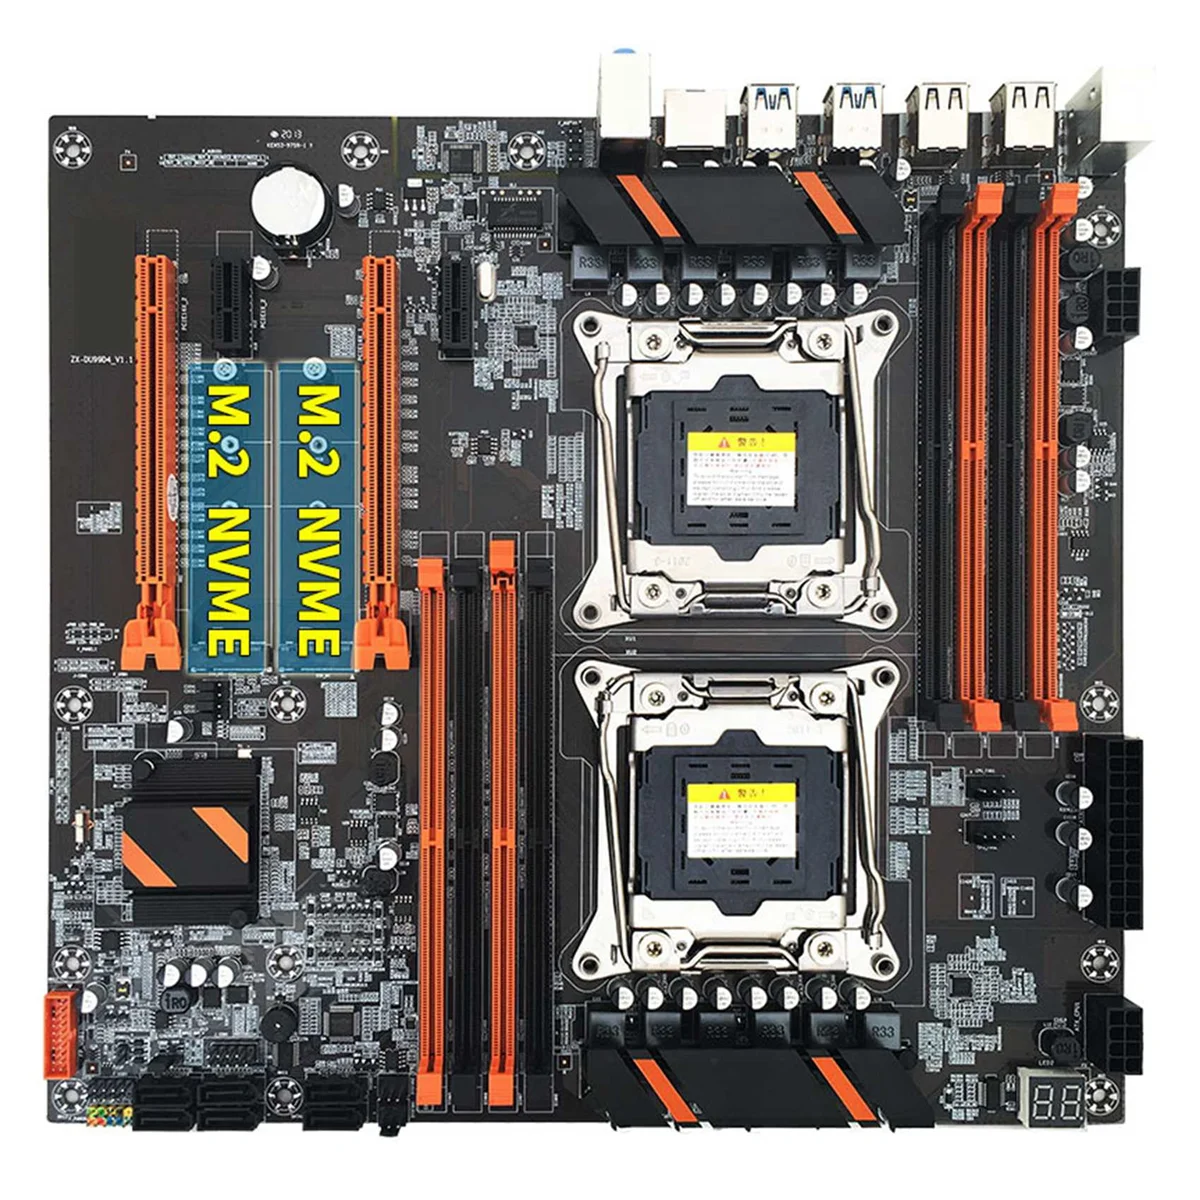 

X99 Dual CPU Motherboard+2XE5 2620 V3 CPU+SATA Cable+Baffle+Thermal Grease LGA 2011 8XDDR4 Slot Support 2011-V3 CPU